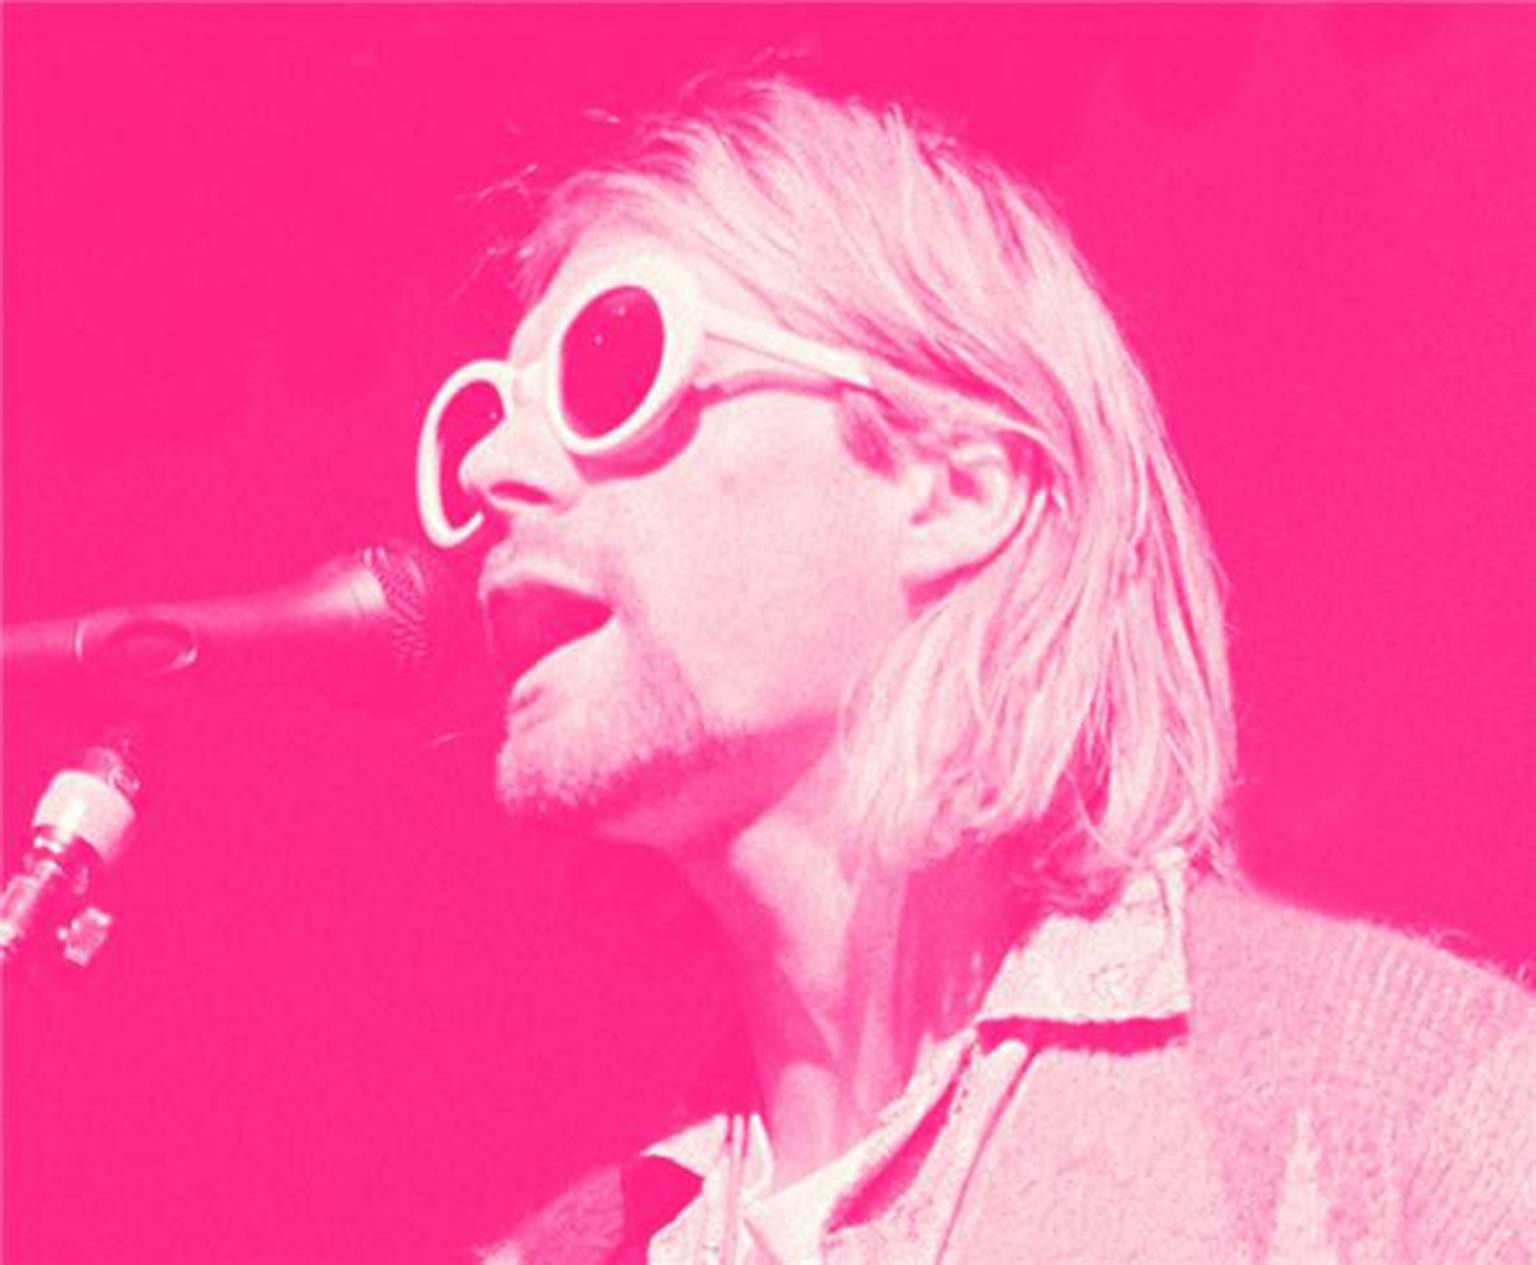 Jesse Frohman Portrait Photograph - Kurt Cobain; "Singing, Pink"